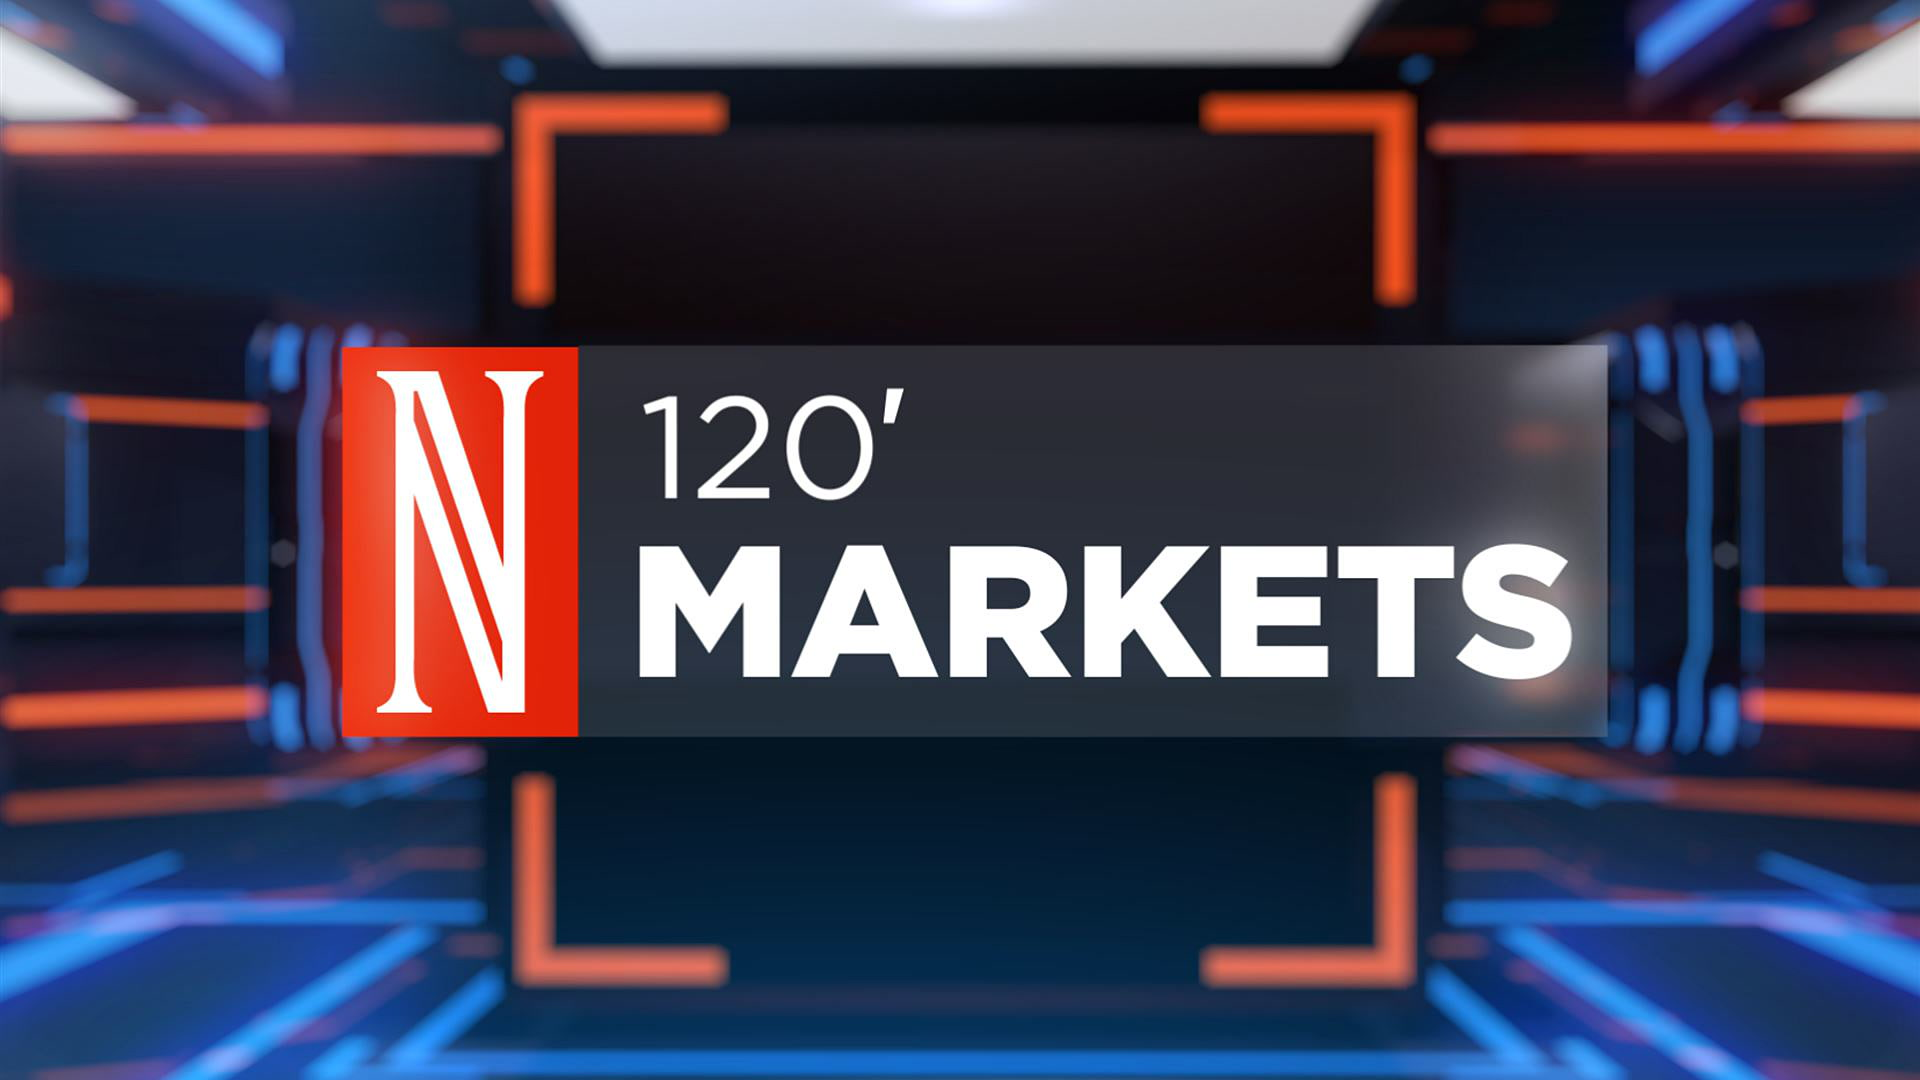 120' Markets